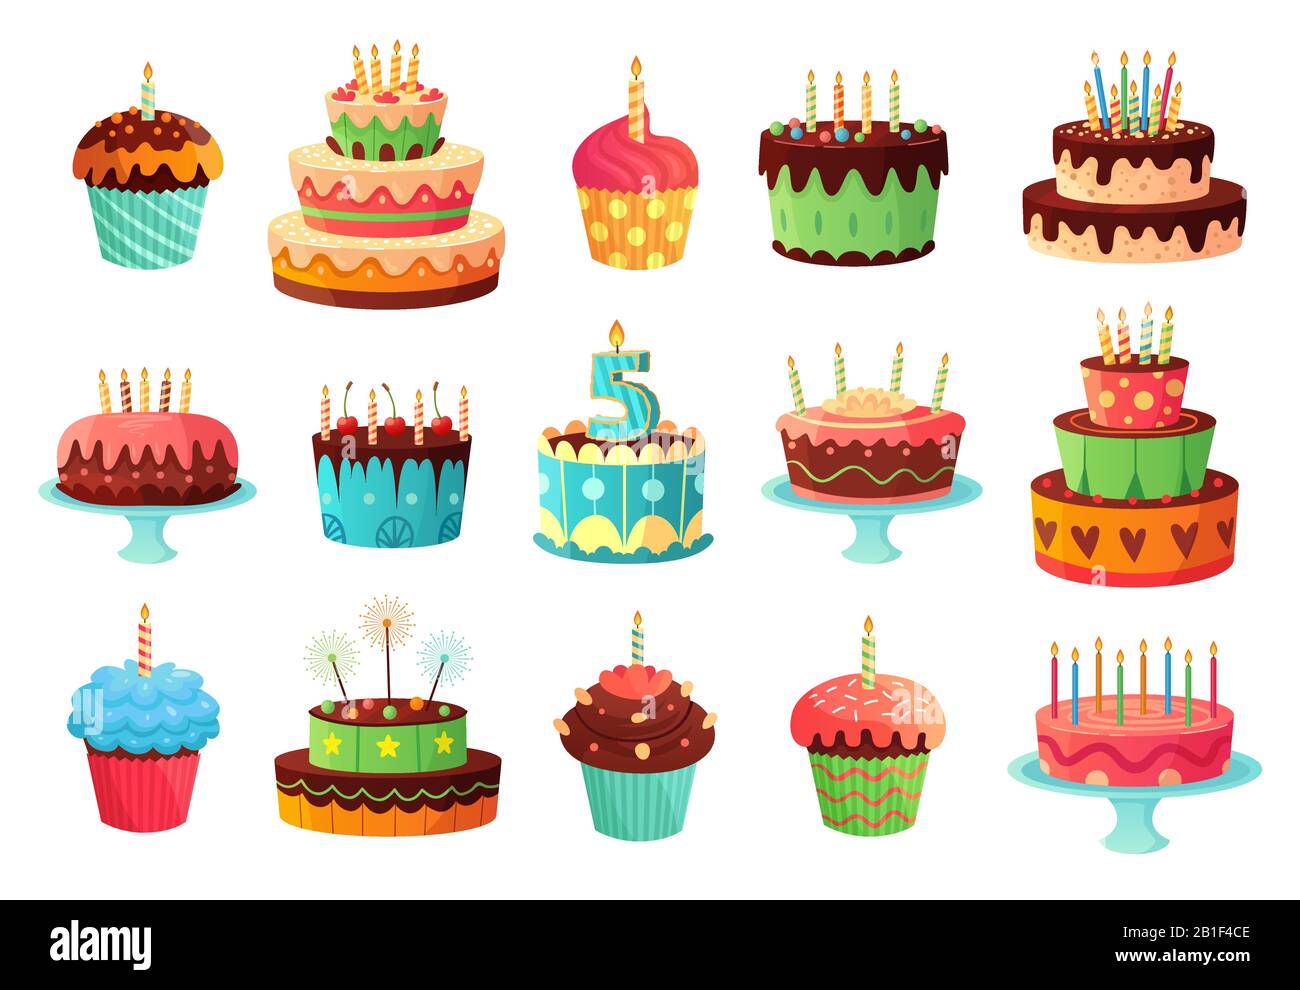 Fête d'anniversaire de dessin animé gâteaux. Gâteau sucré cuit au four, cupcakes colorés et gâteau de célébration illustration vectorielle Illustration de Vecteur